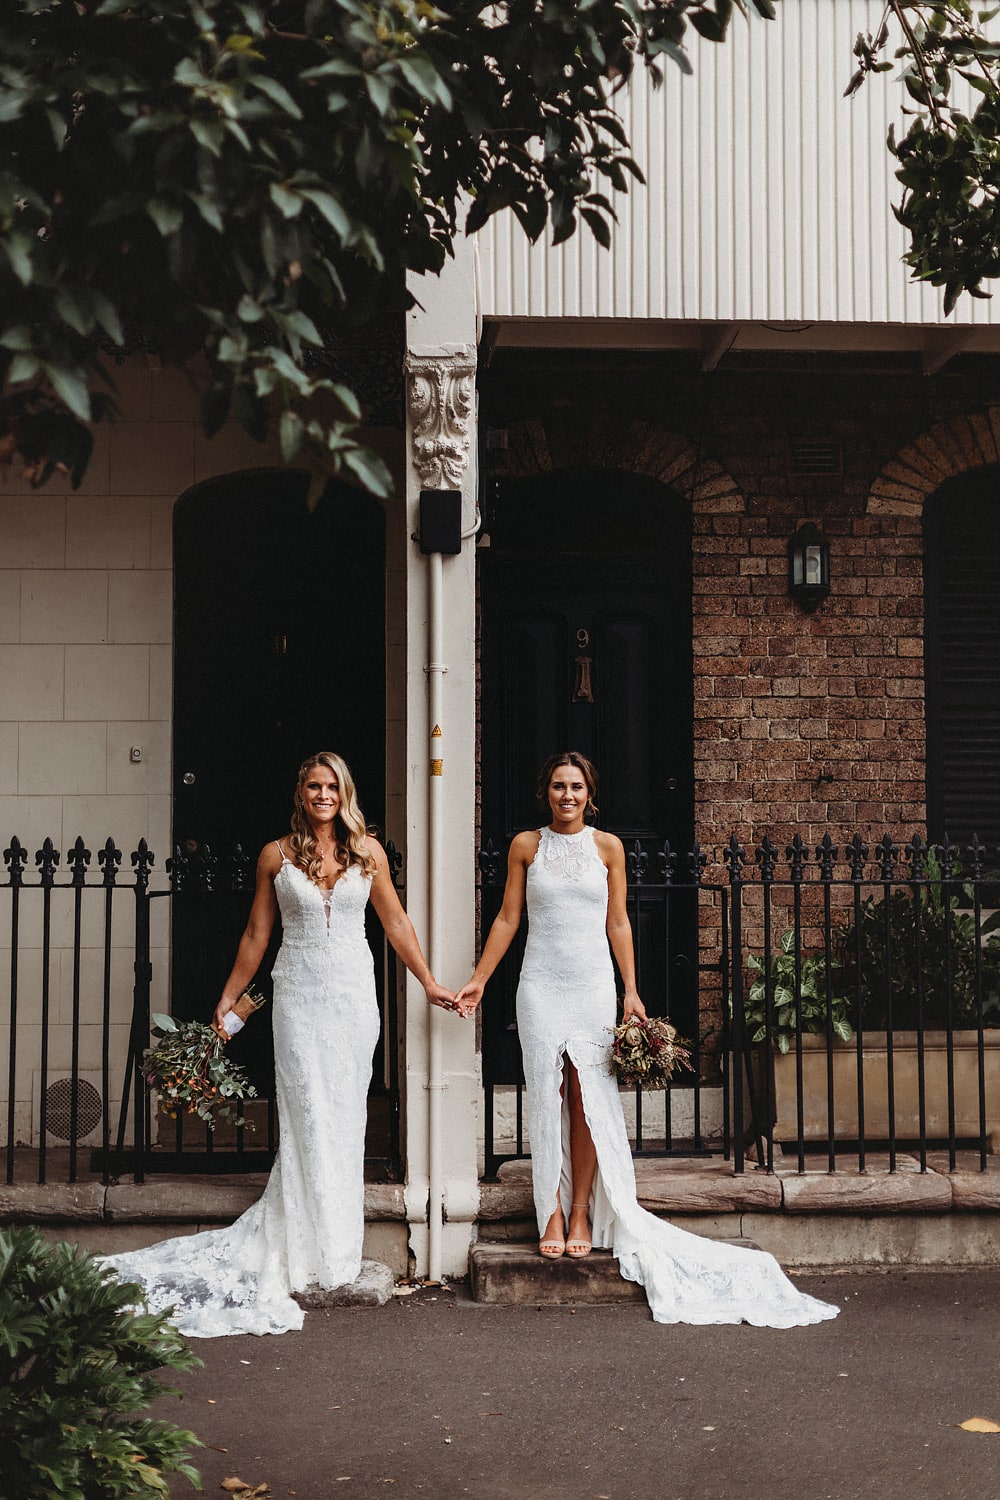 Sydney-wedding-photographer-woolloomooloo-streets